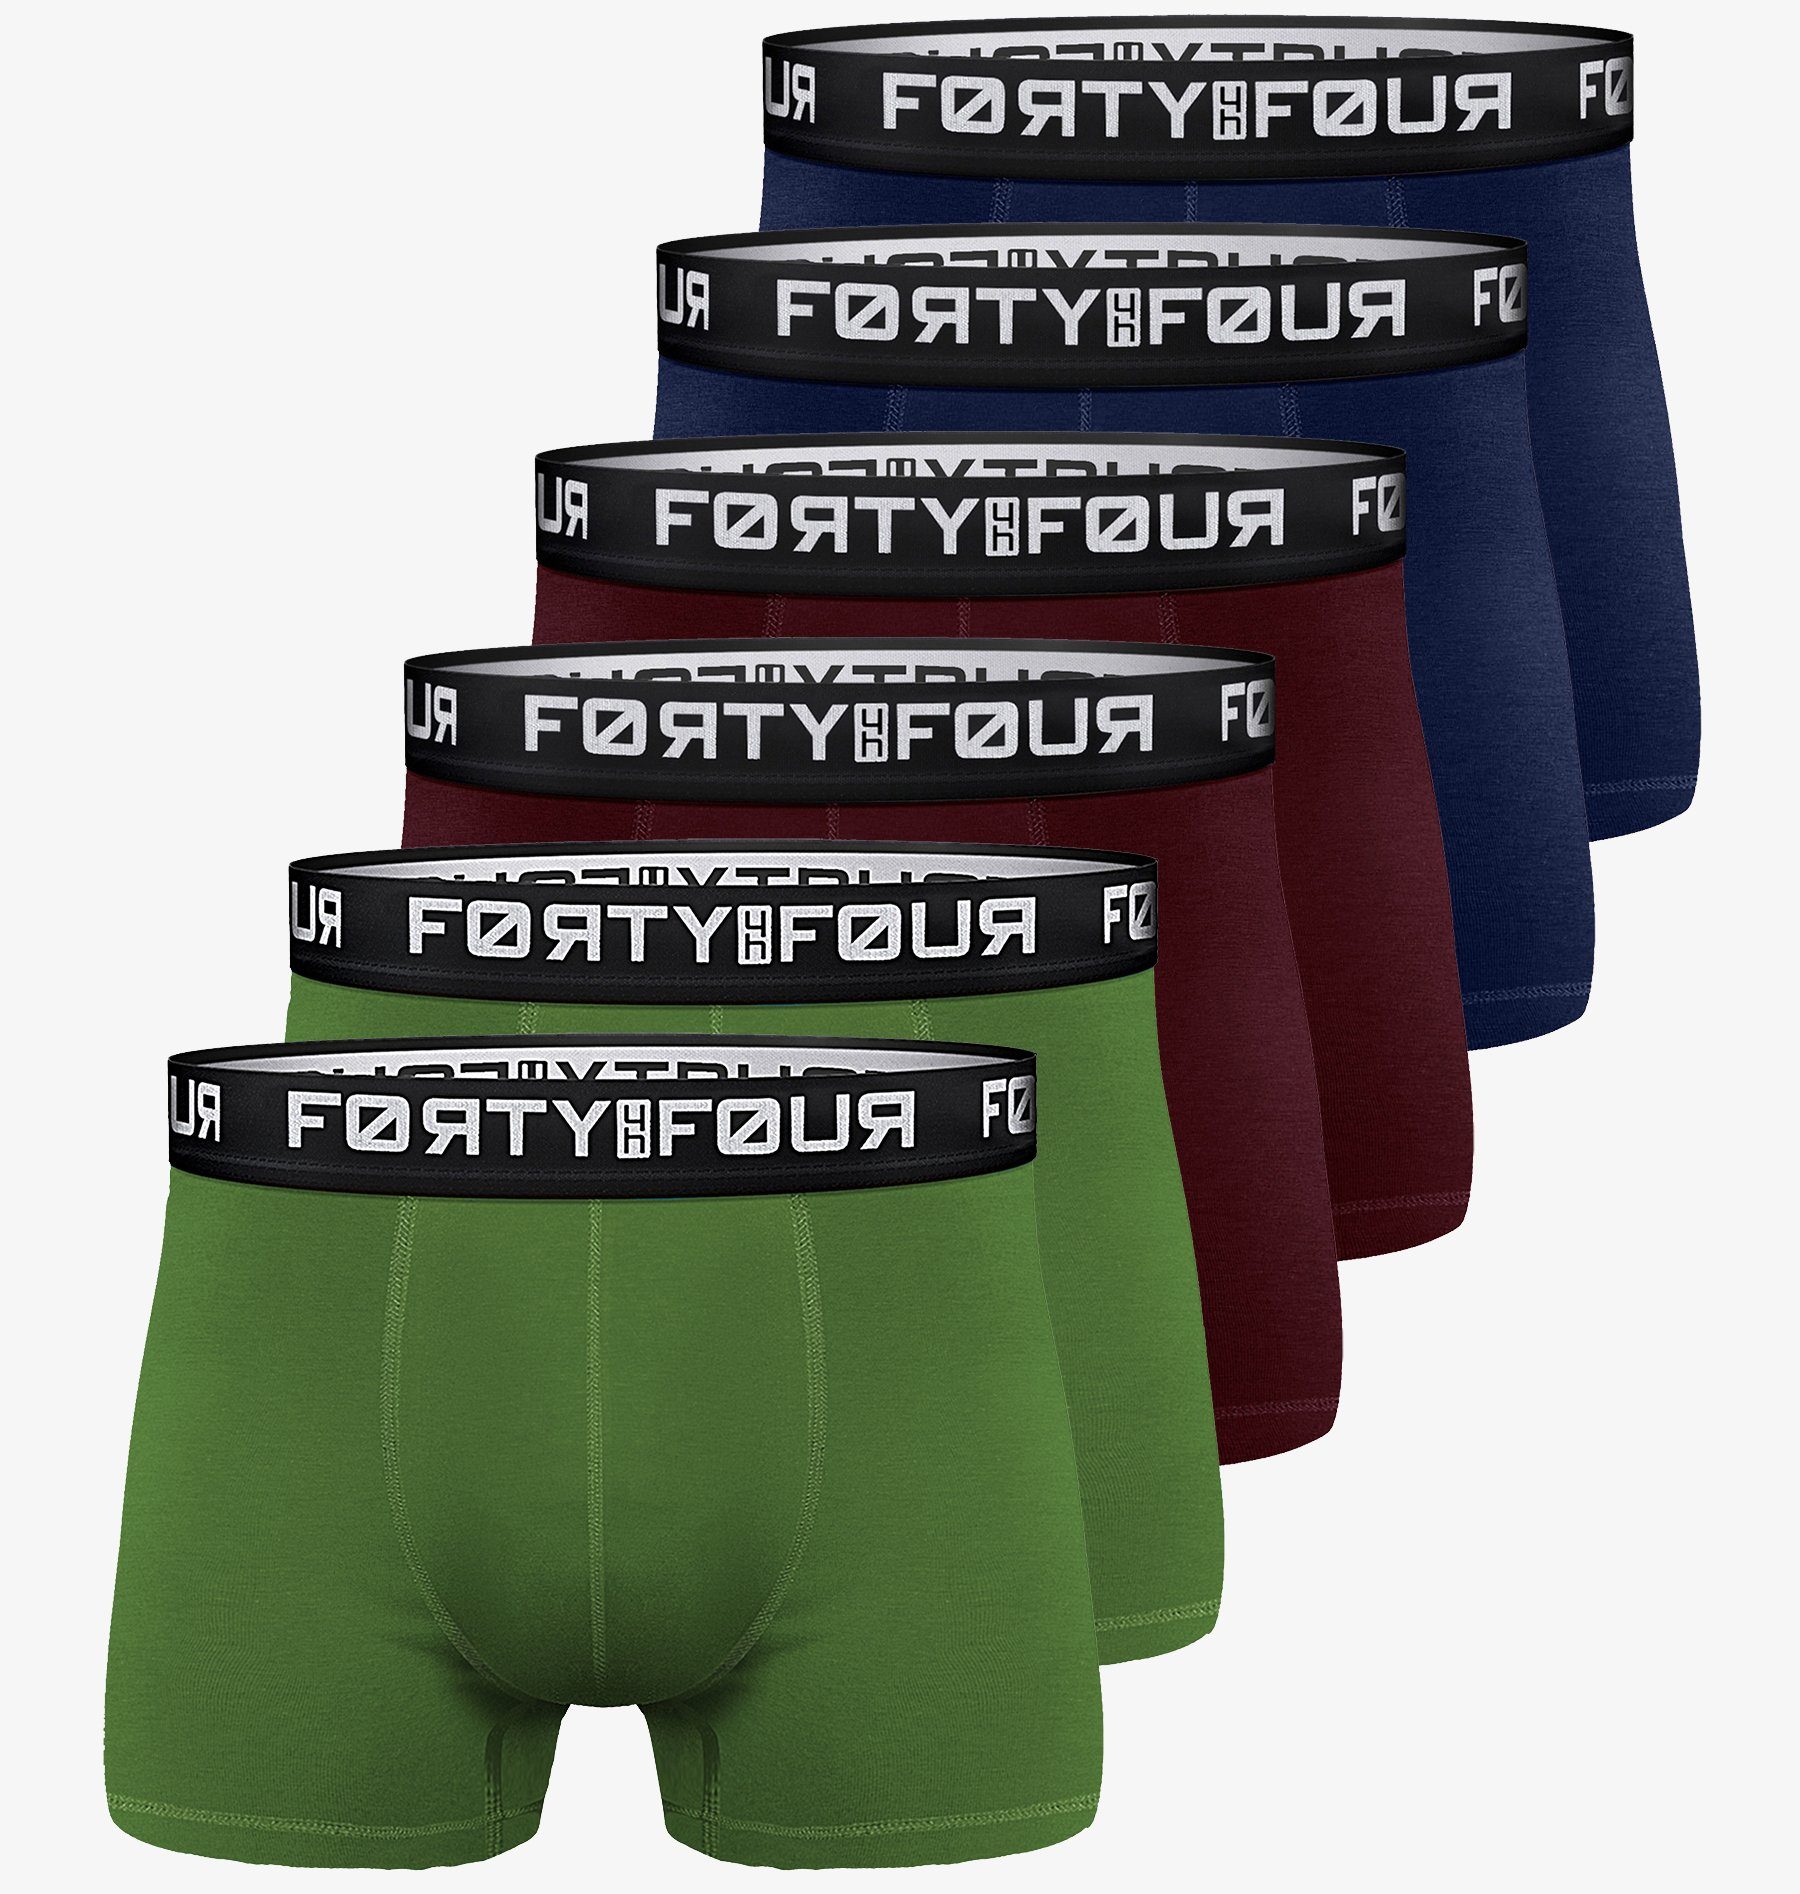 FortyFour Boxershorts Herren Männer Unterhosen Baumwolle Premium Qualität perfekte Passform (Vorteilspack, 6er Pack) S - 7XL 706f-mehrfarbig